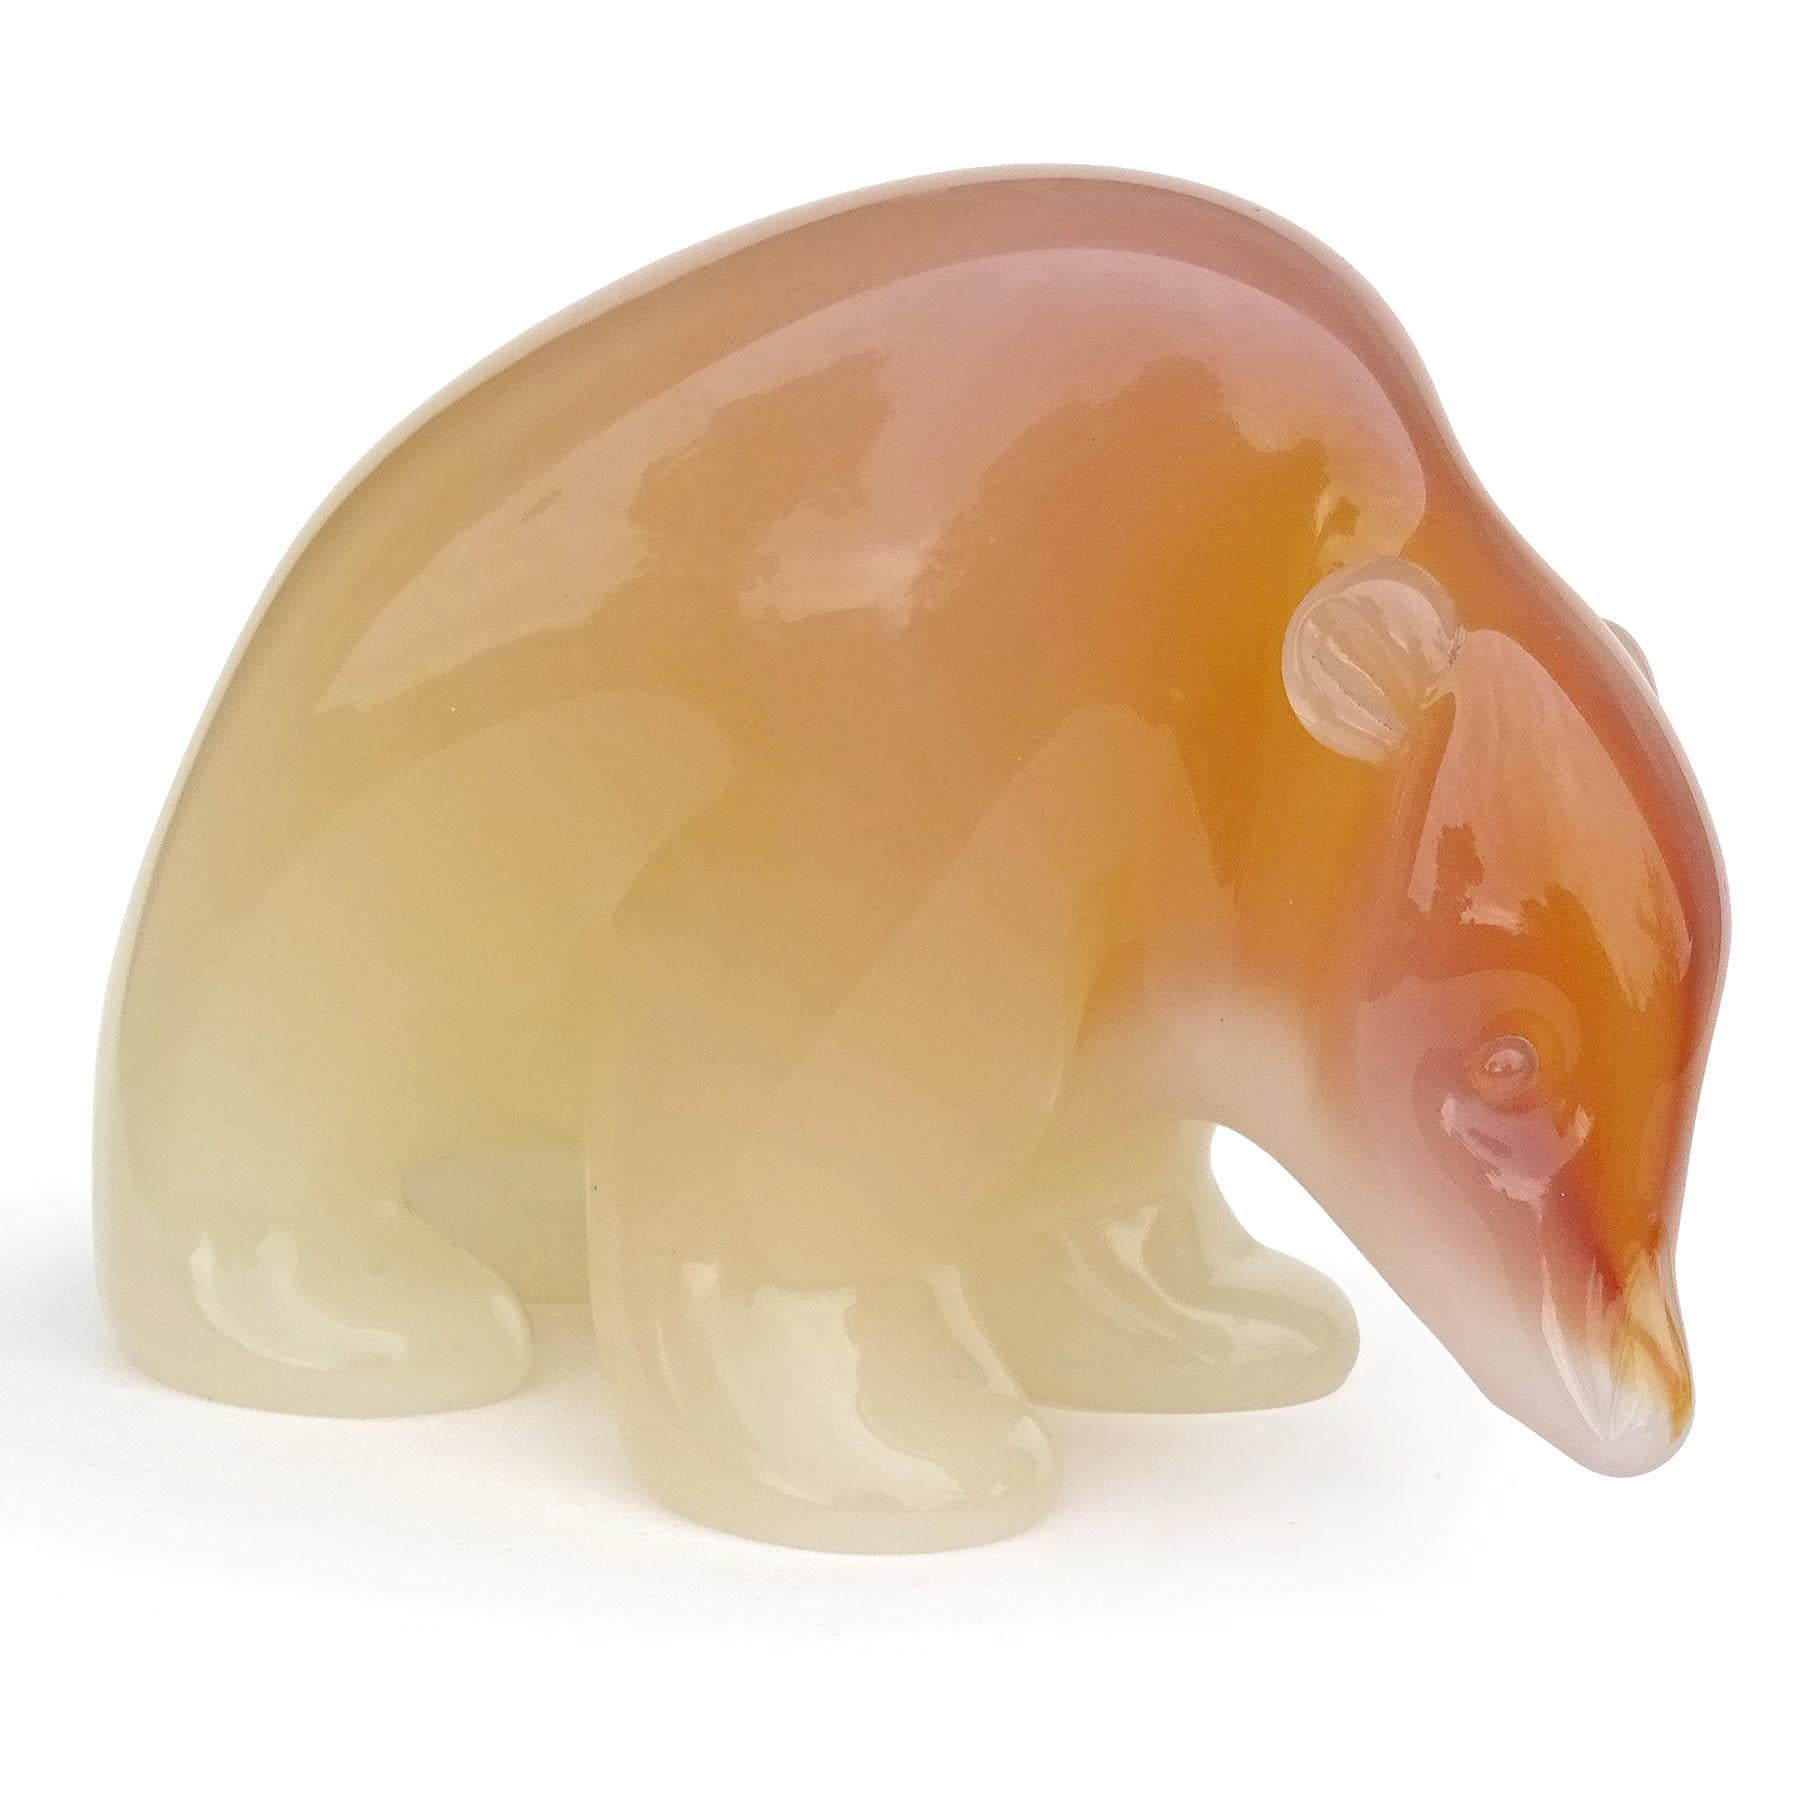 Magnifique et grande sculpture / figure d'ours en verre d'art italien Murano soufflé à la main, orange et blanc opalescent. Documenté au designer Archimede Seguso. L'ours est joliment sculpté avec des traits très réalistes, notamment des petits yeux